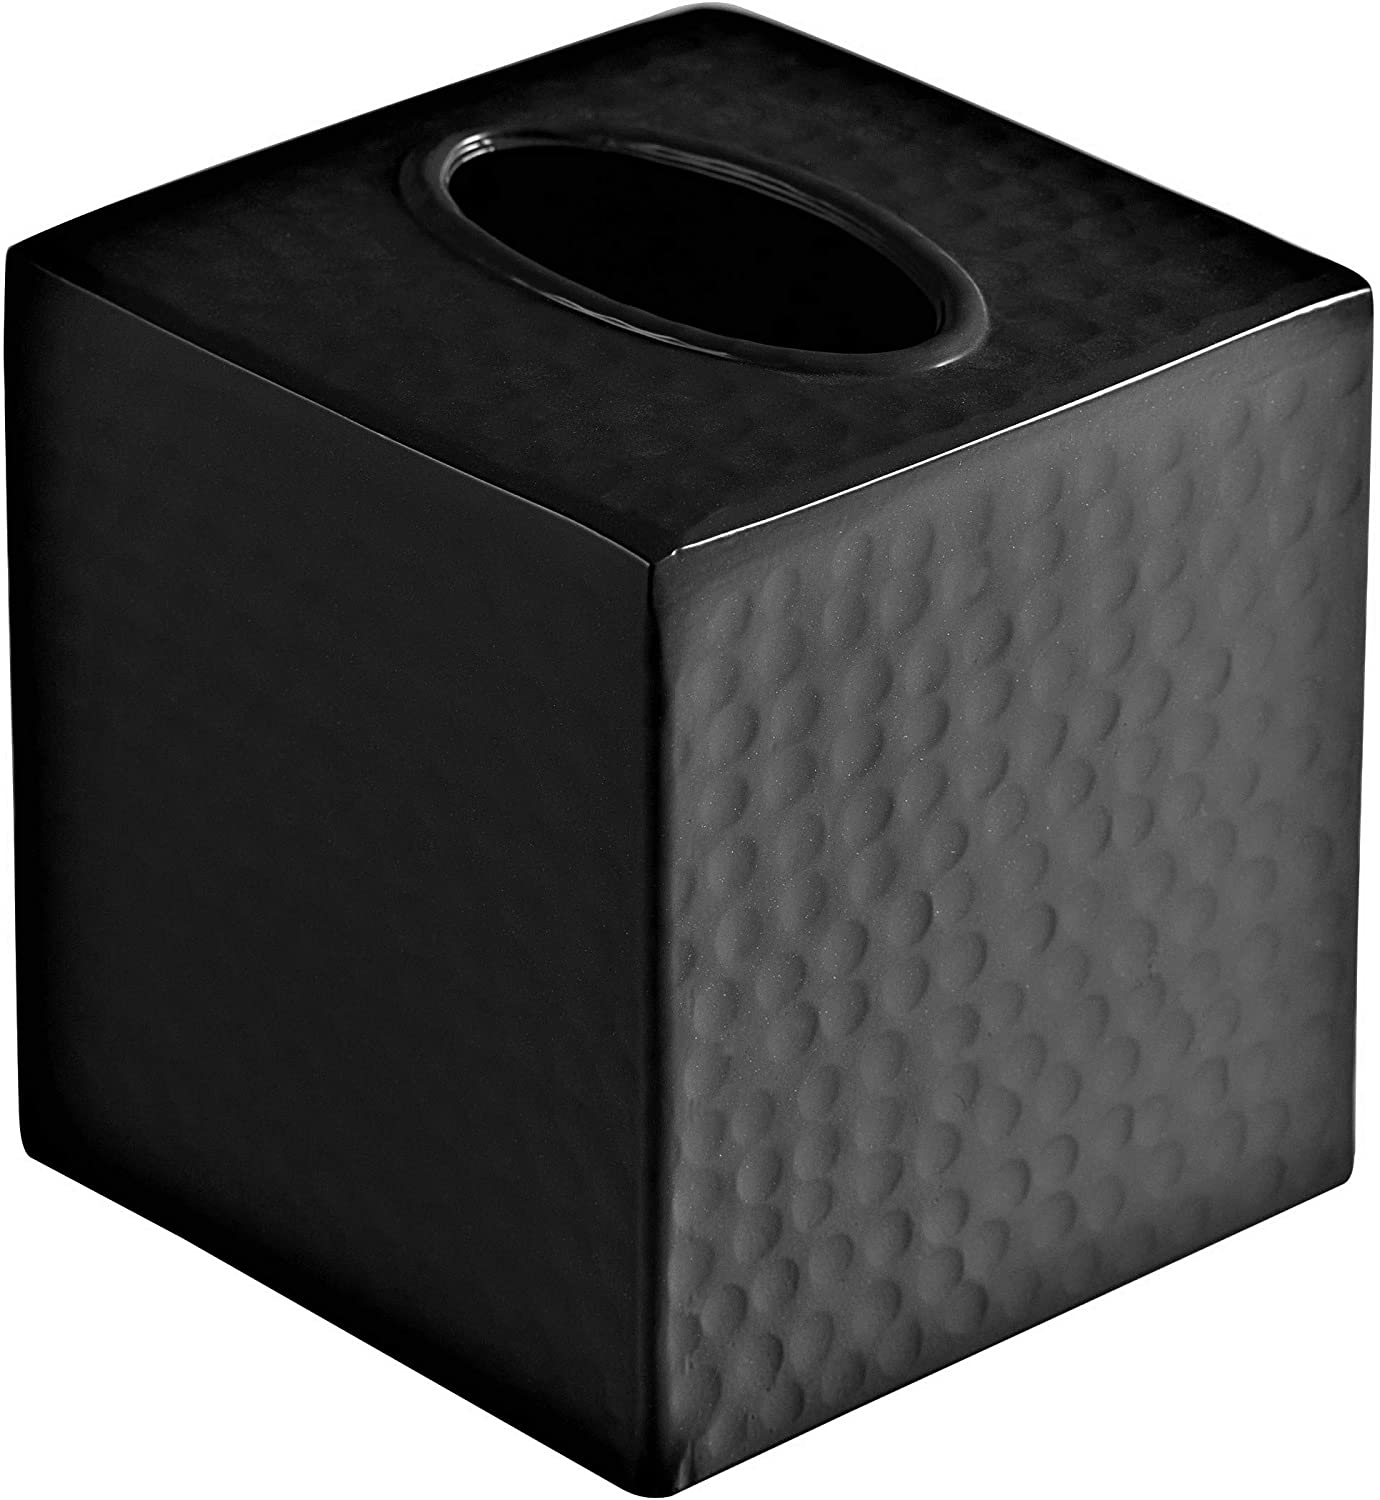 Black Tissue Box Cover,Square Tissue Box Cover,Black Tissue Box  Holders,Tissue Holder for Bathroom Accessories,Bathroom Tissue Holders